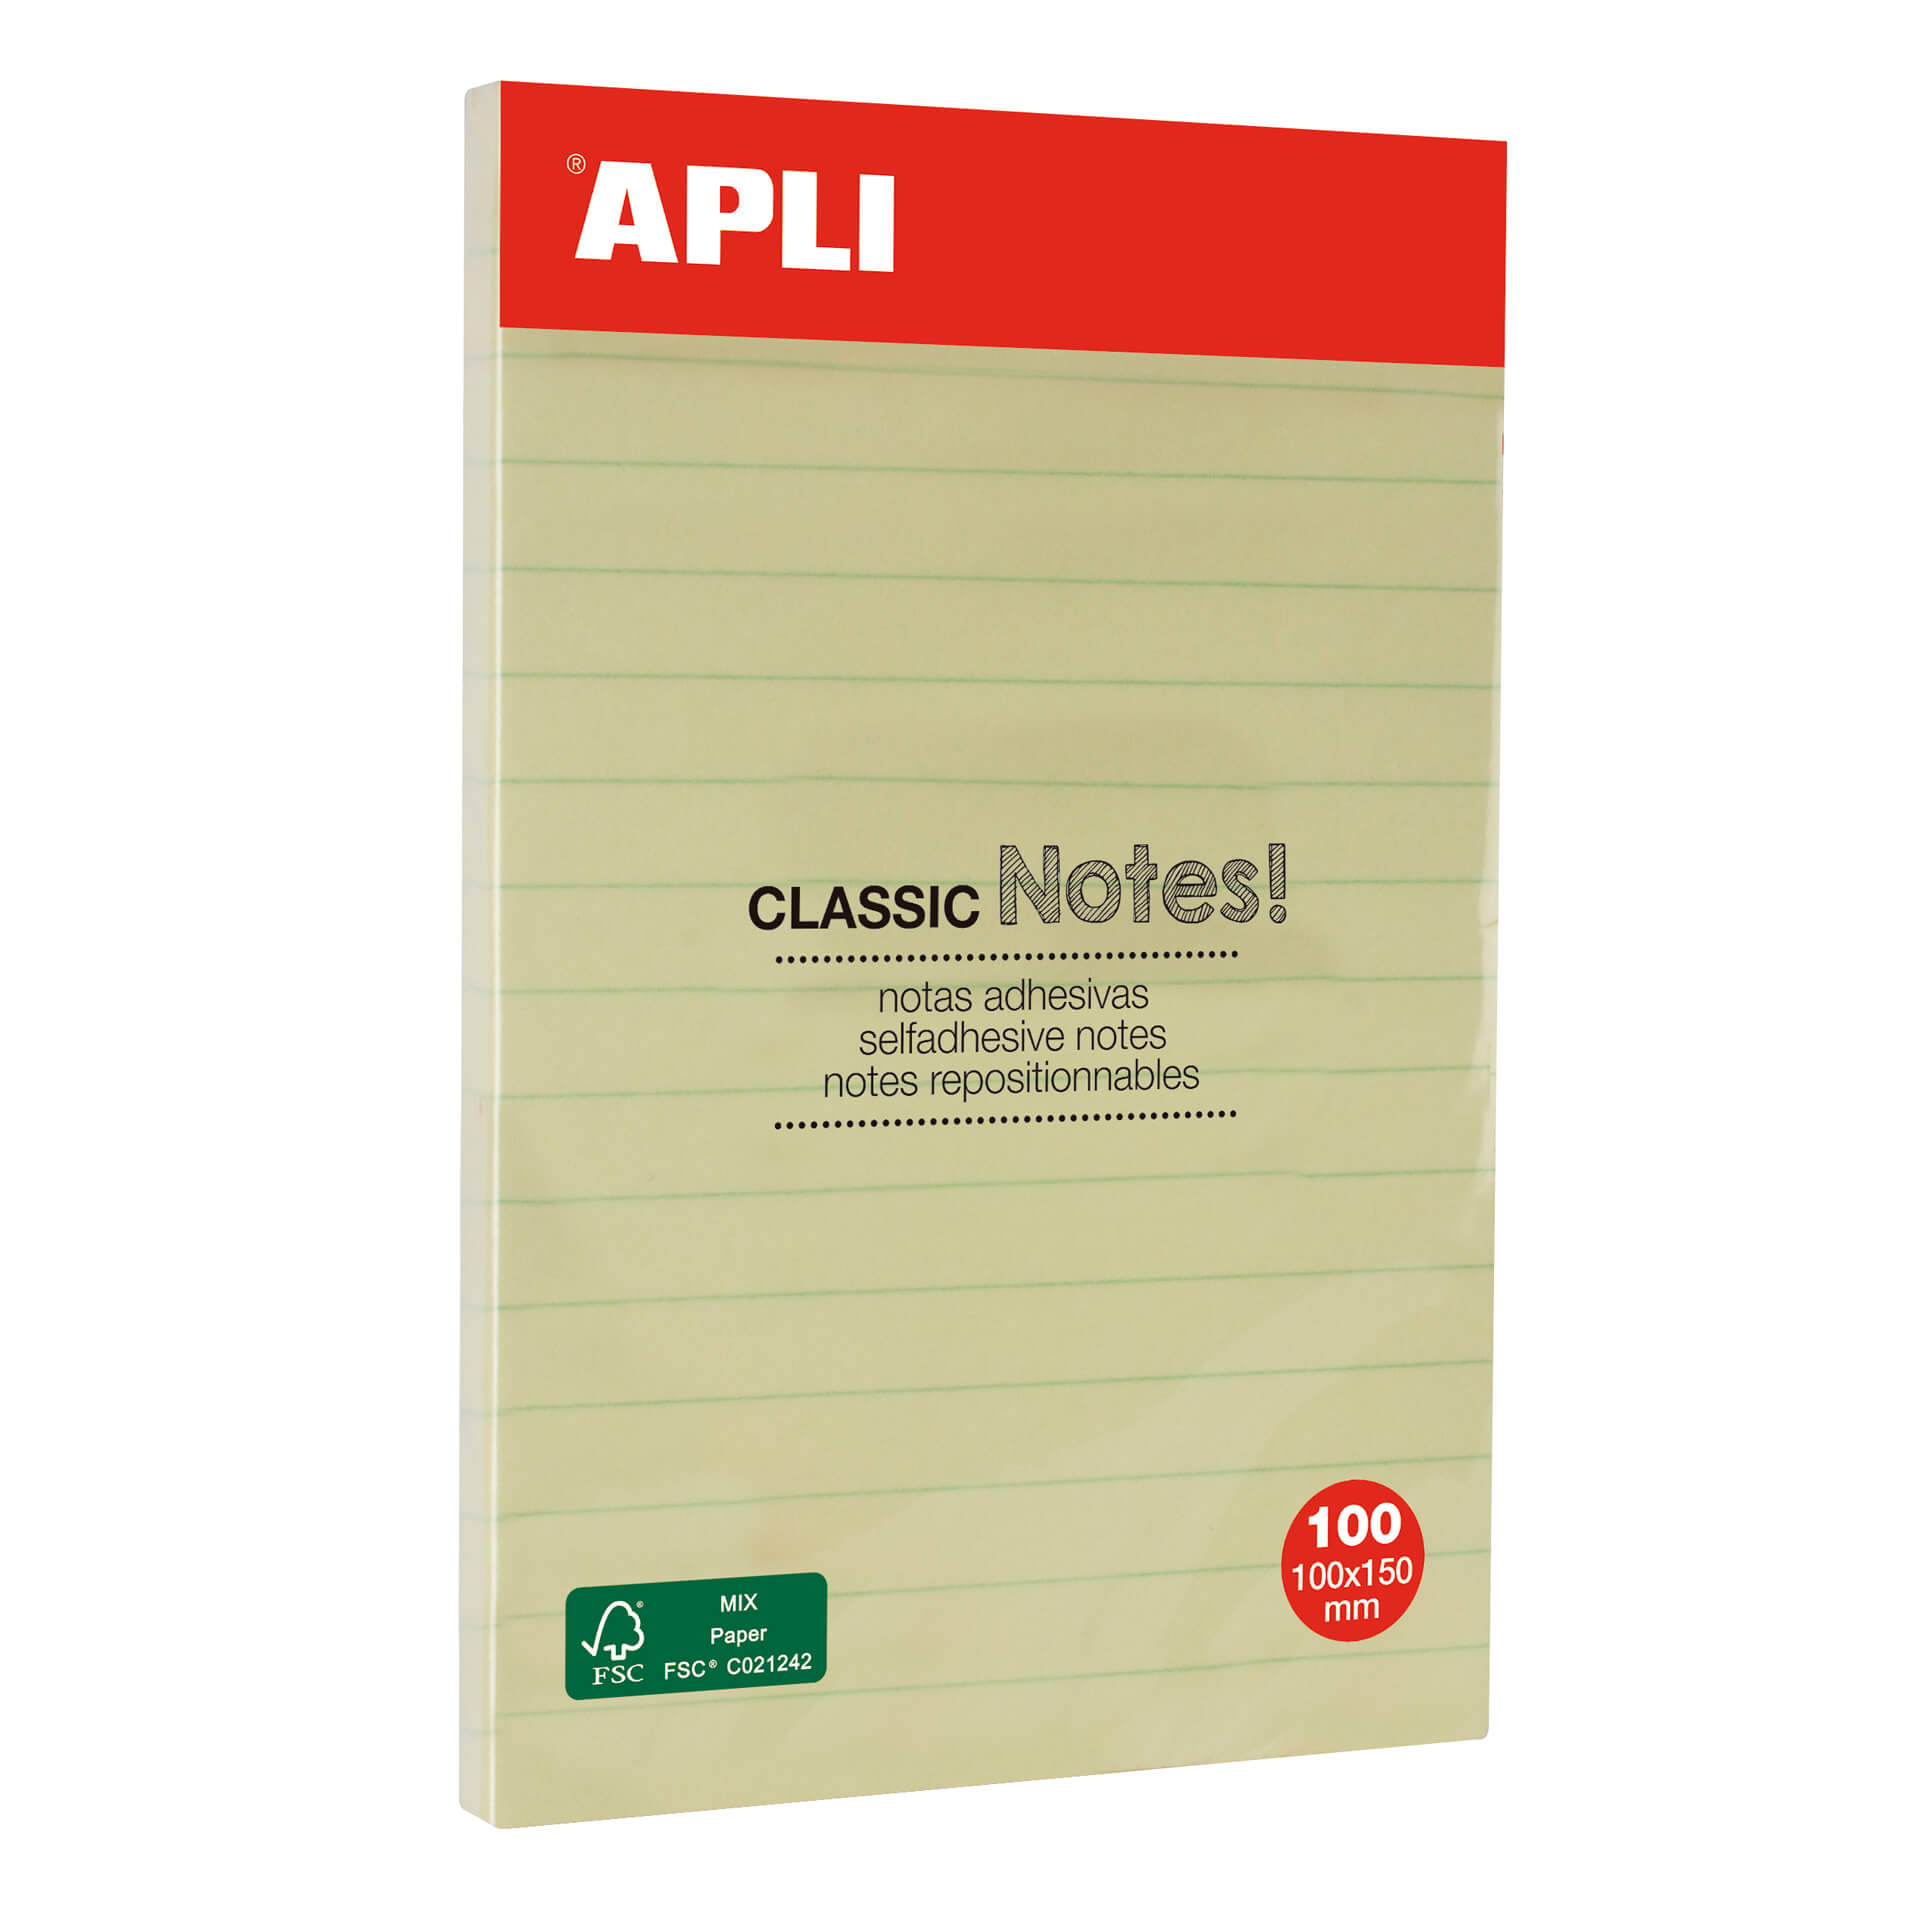 Apli Classic Notes autocollantes avec lignes 100x150mm - Bloc de 100 feuilles - Adhésif de haute qualité - Facile à décoller - Jaune